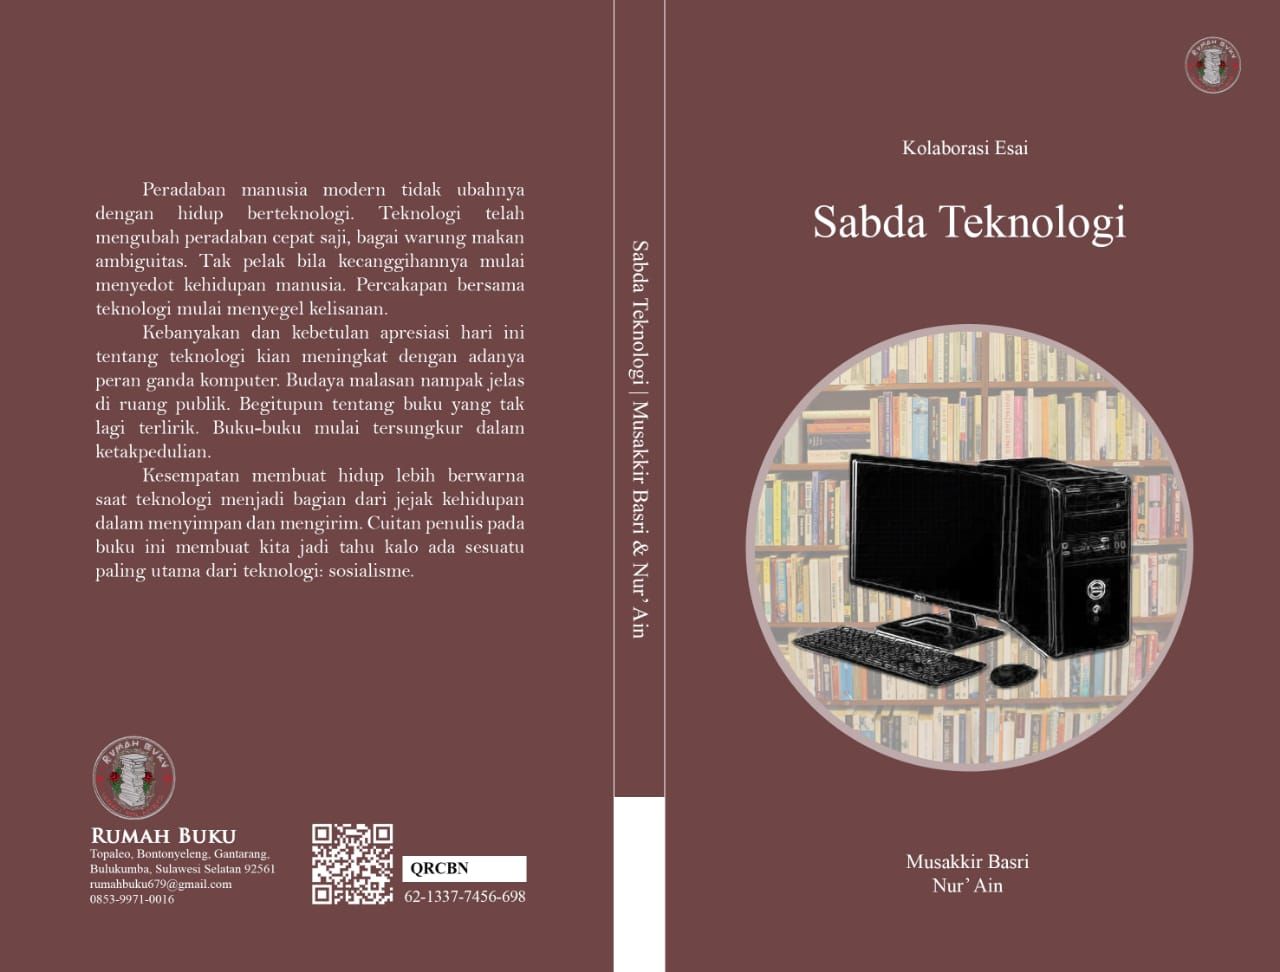 Buku Sabda Teknologi yang diterbitkan Rumah Buku, sebuah penerbit yang didirikan oleh sebuah komunitas literasi di Bulukumba.